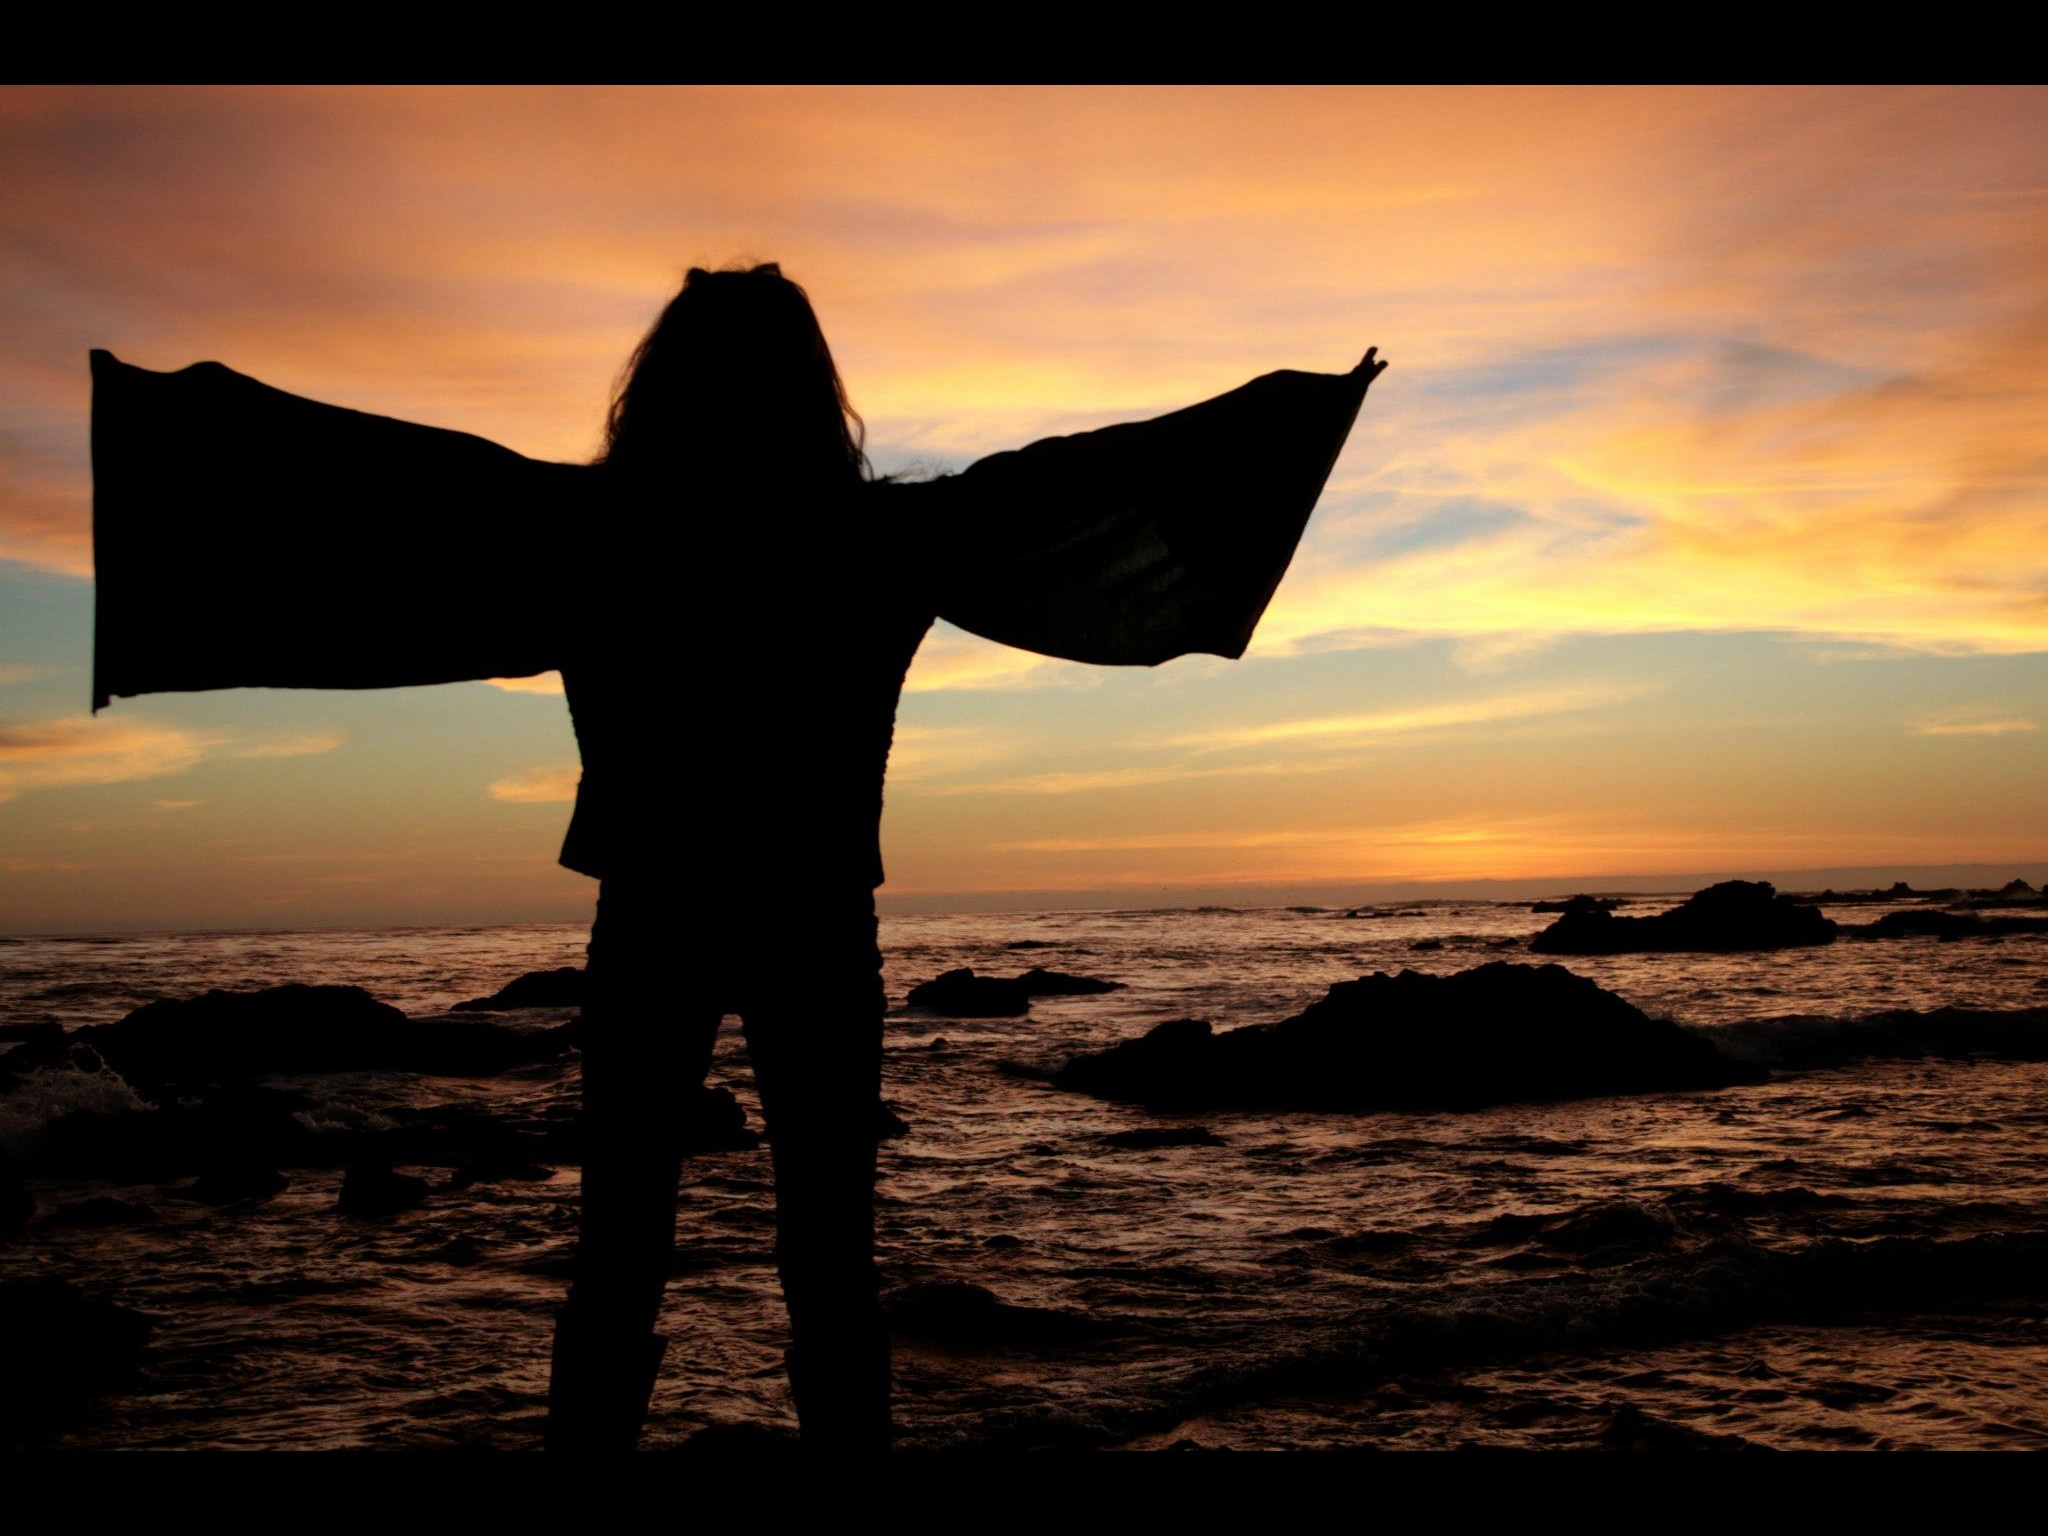 pacific ocean #sunset
"angel"
asminnsingez 01.2013
by UtkanK.